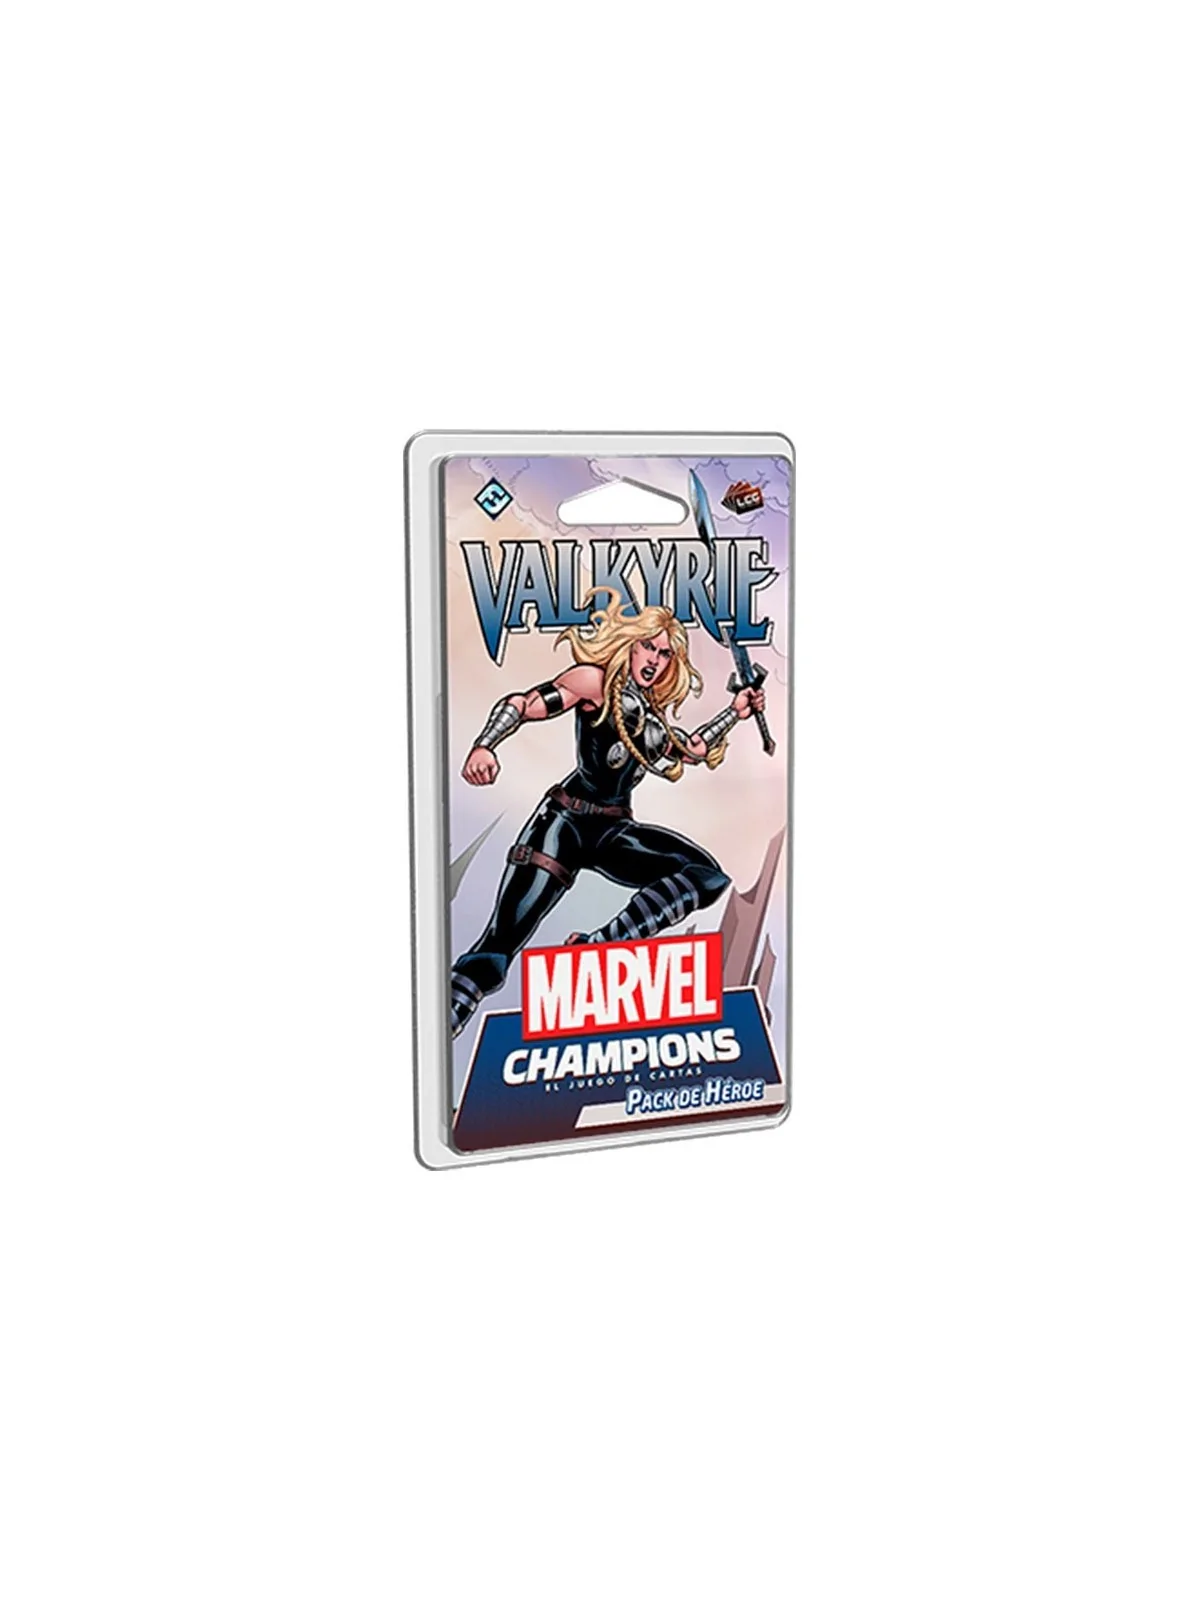 Comprar Marvel Champions: Valkyrie barato al mejor precio 14,10 € de F